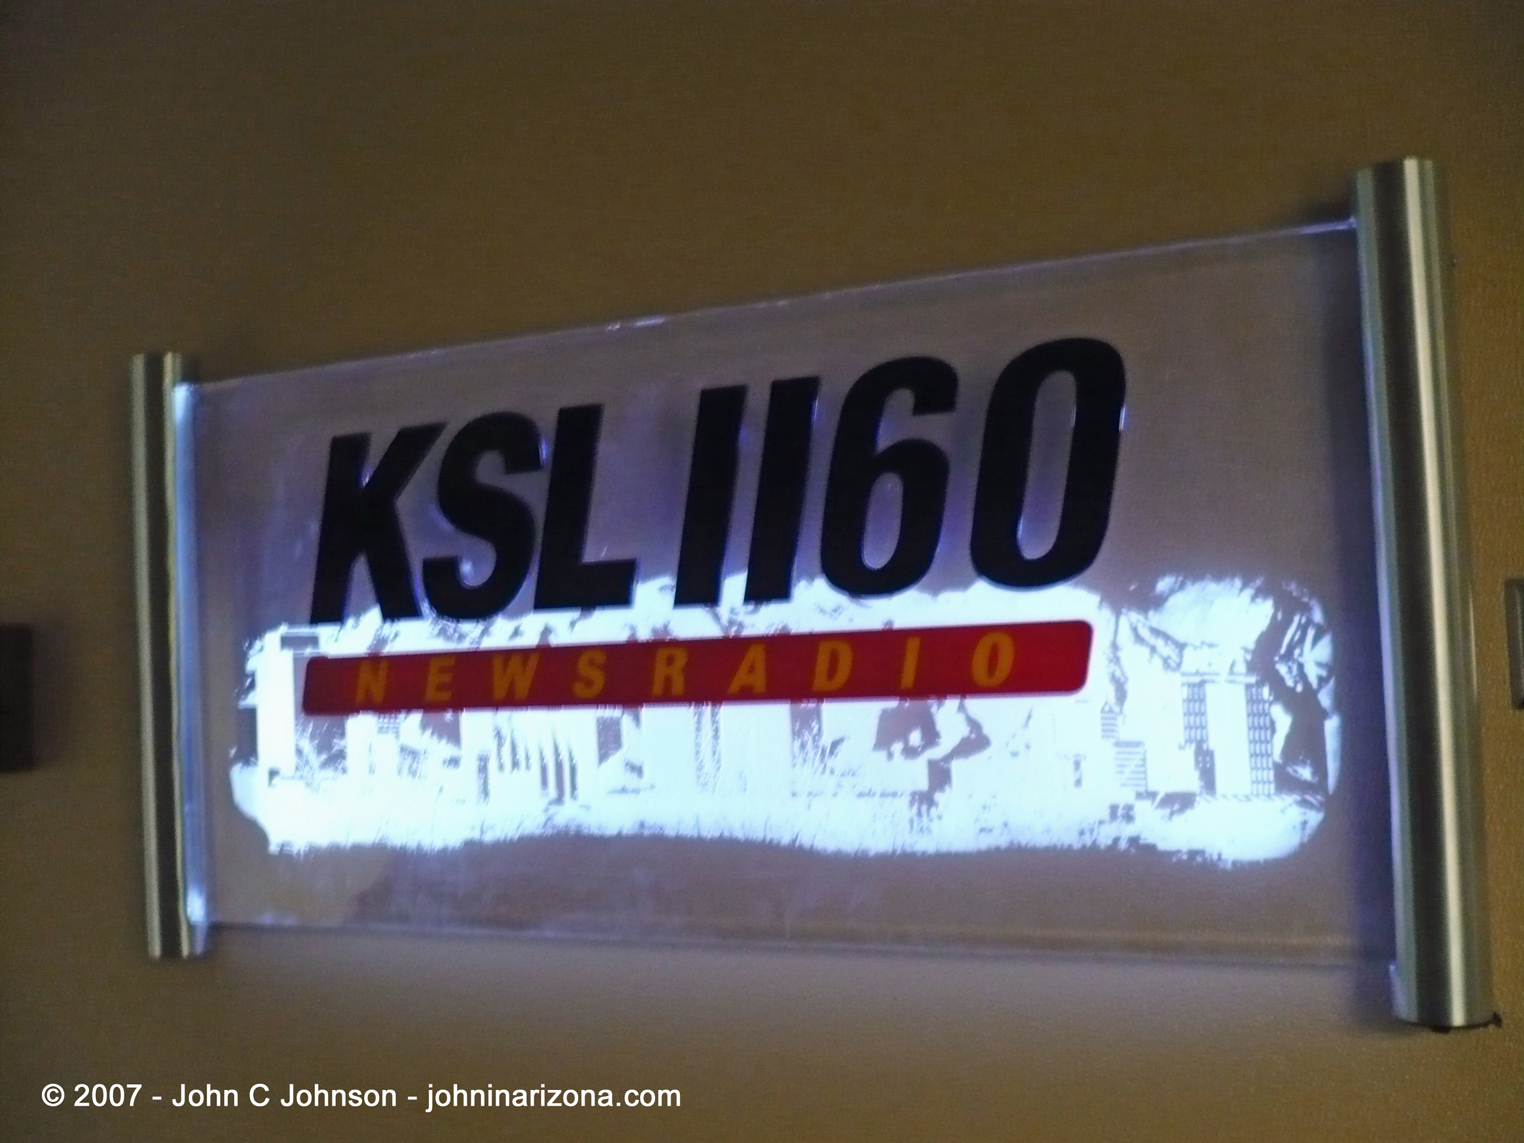 KSL Radio 1160 Salt Lake City, Utah